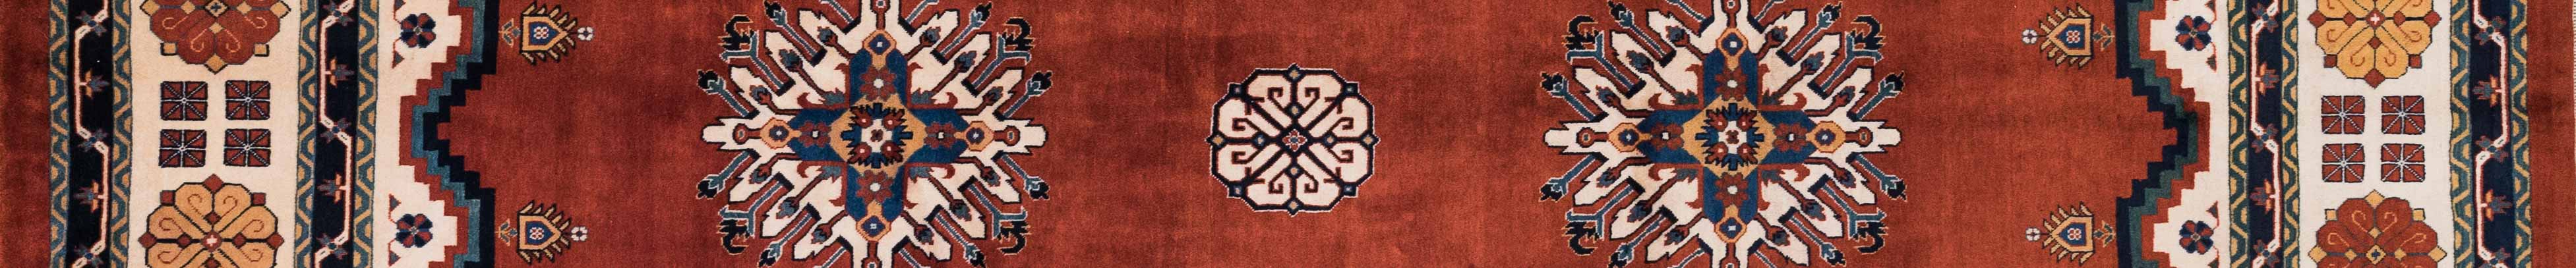 Shiraz Persian Carpet Rug N1Carpet Canada Montreal Tapis Persan 2900